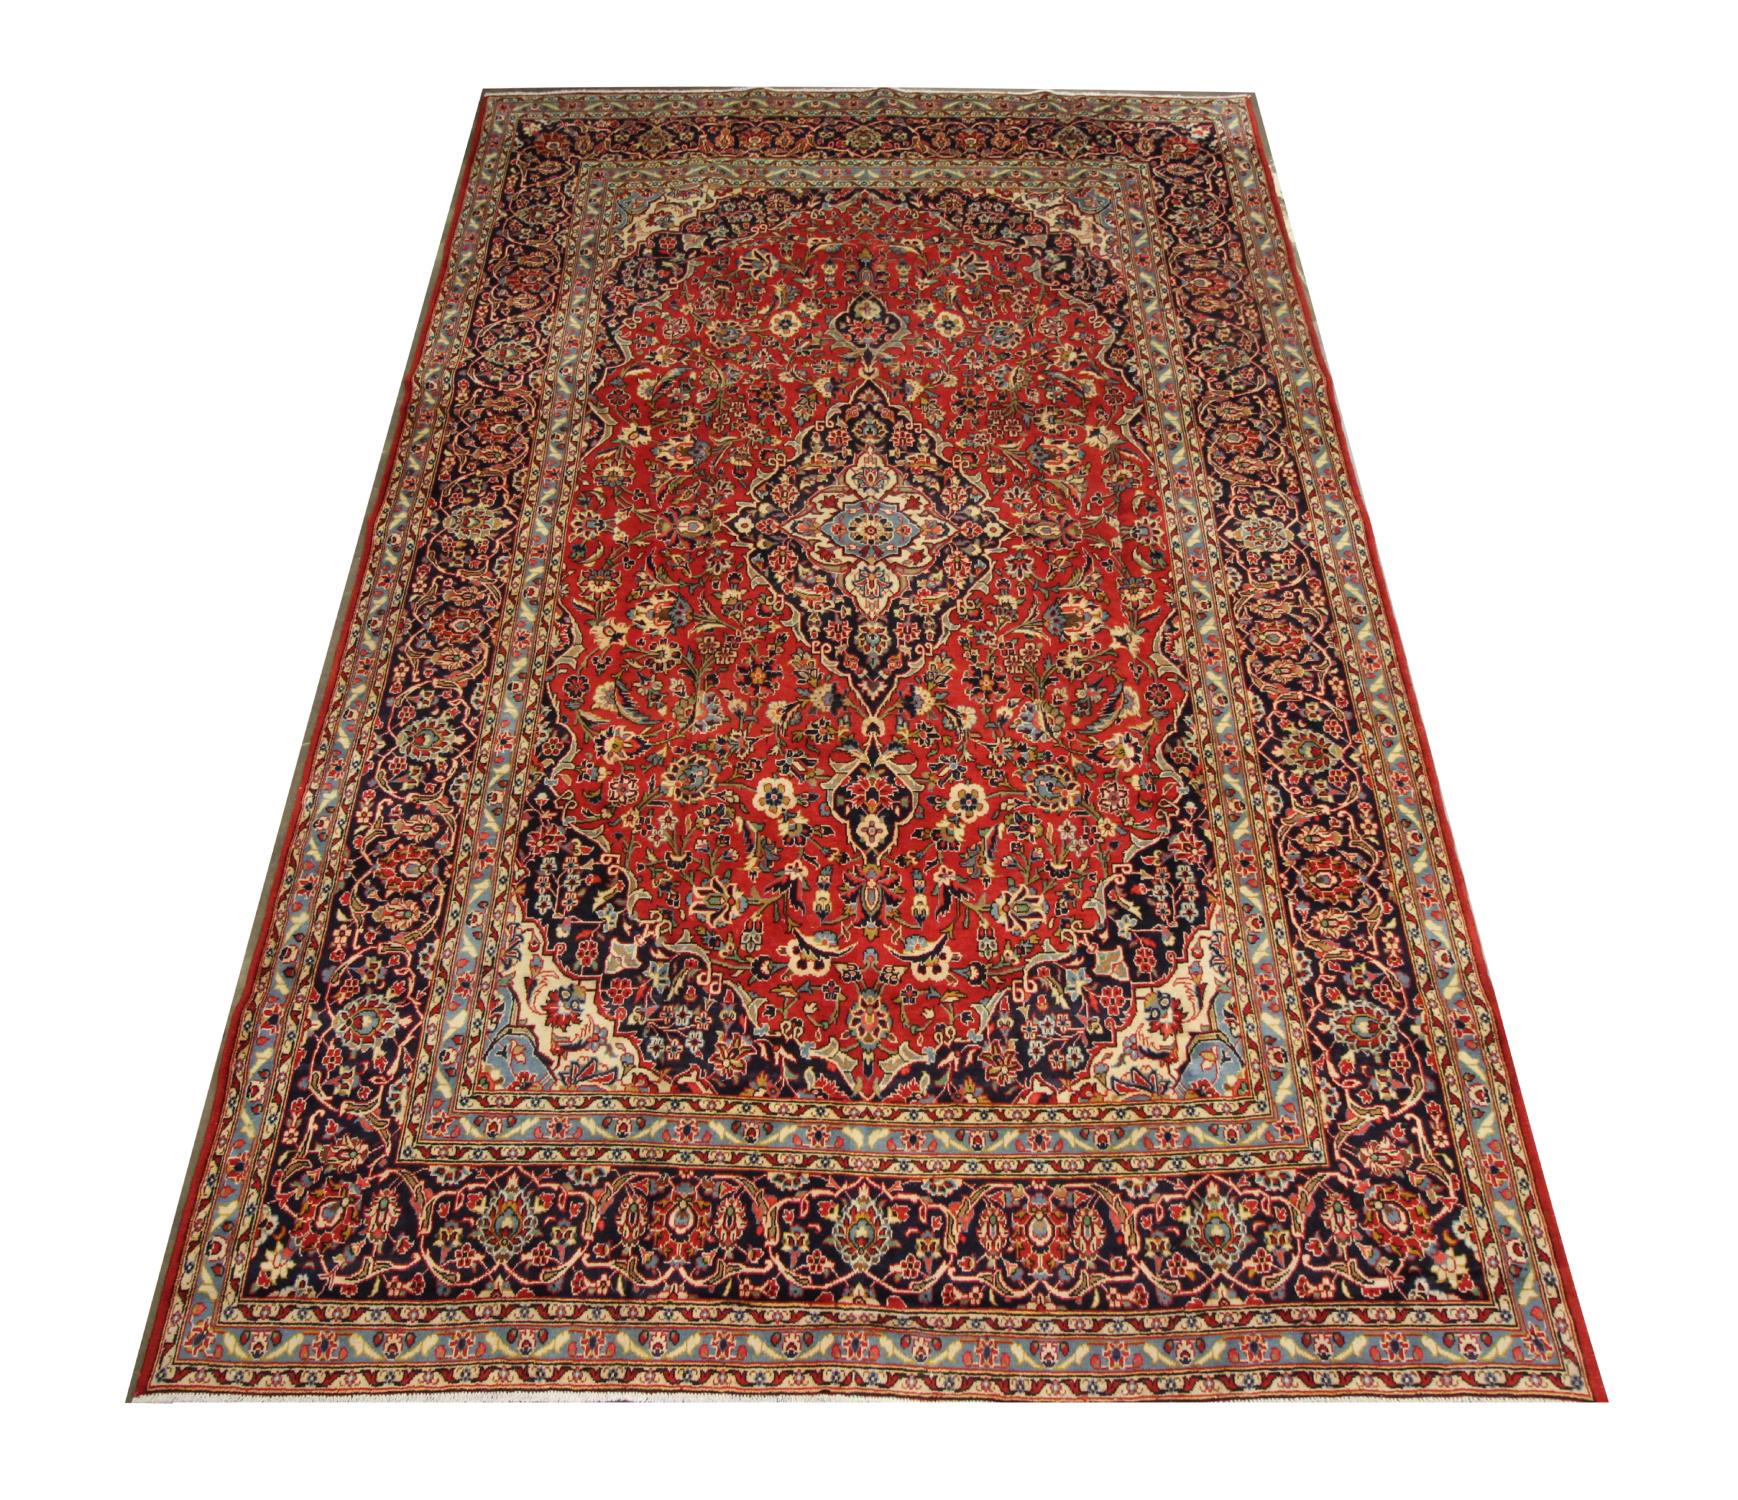 Ce grand tapis oriental est un merveilleux exemple de tapis turcs tissés à la fin du XXe siècle. Le motif central a été tissé sur un champ rouge riche avec des accents bleu profond, vert, beige et rouille qui composent le médaillon décoratif et le